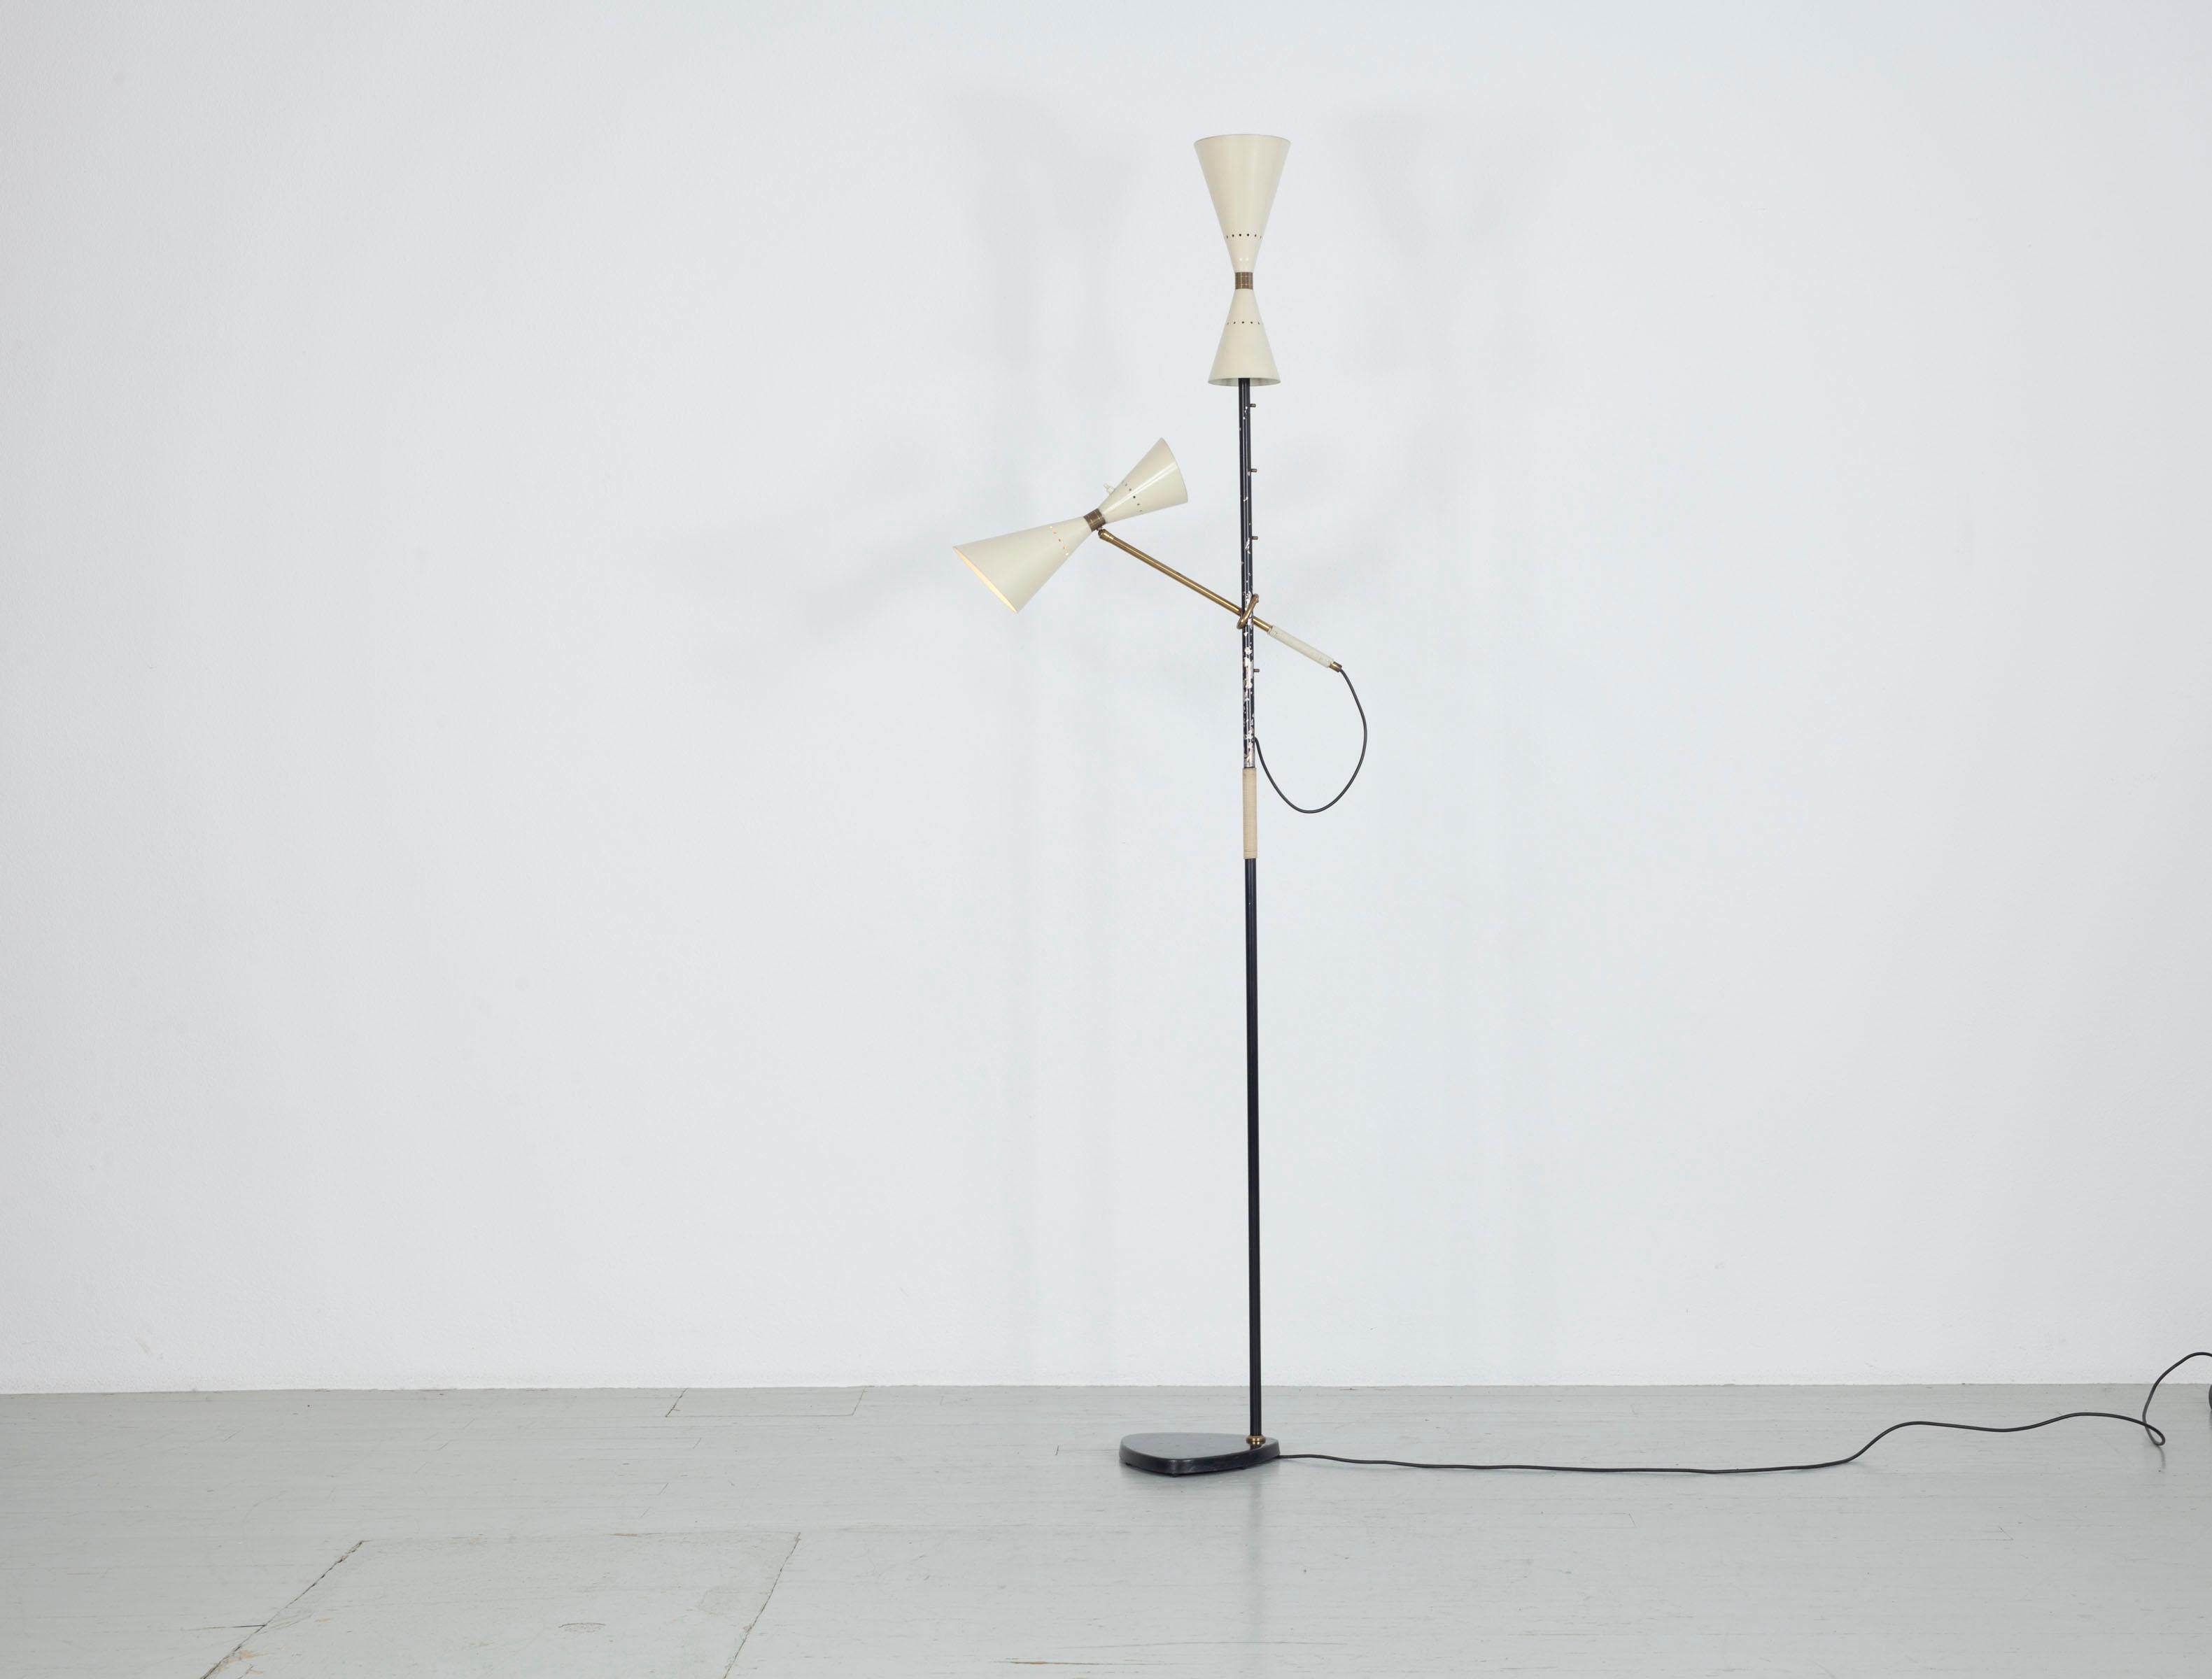 Stehleuchte - Design by J.T. Kalmar, hergestellt von Kalmar, Wien, 1950er Jahre. Diese Lampe hat einen verstellbaren, lackierten Metallschirm und ein Oberlicht. 

Für detailliertere Bilder können Sie uns gerne kontaktieren.